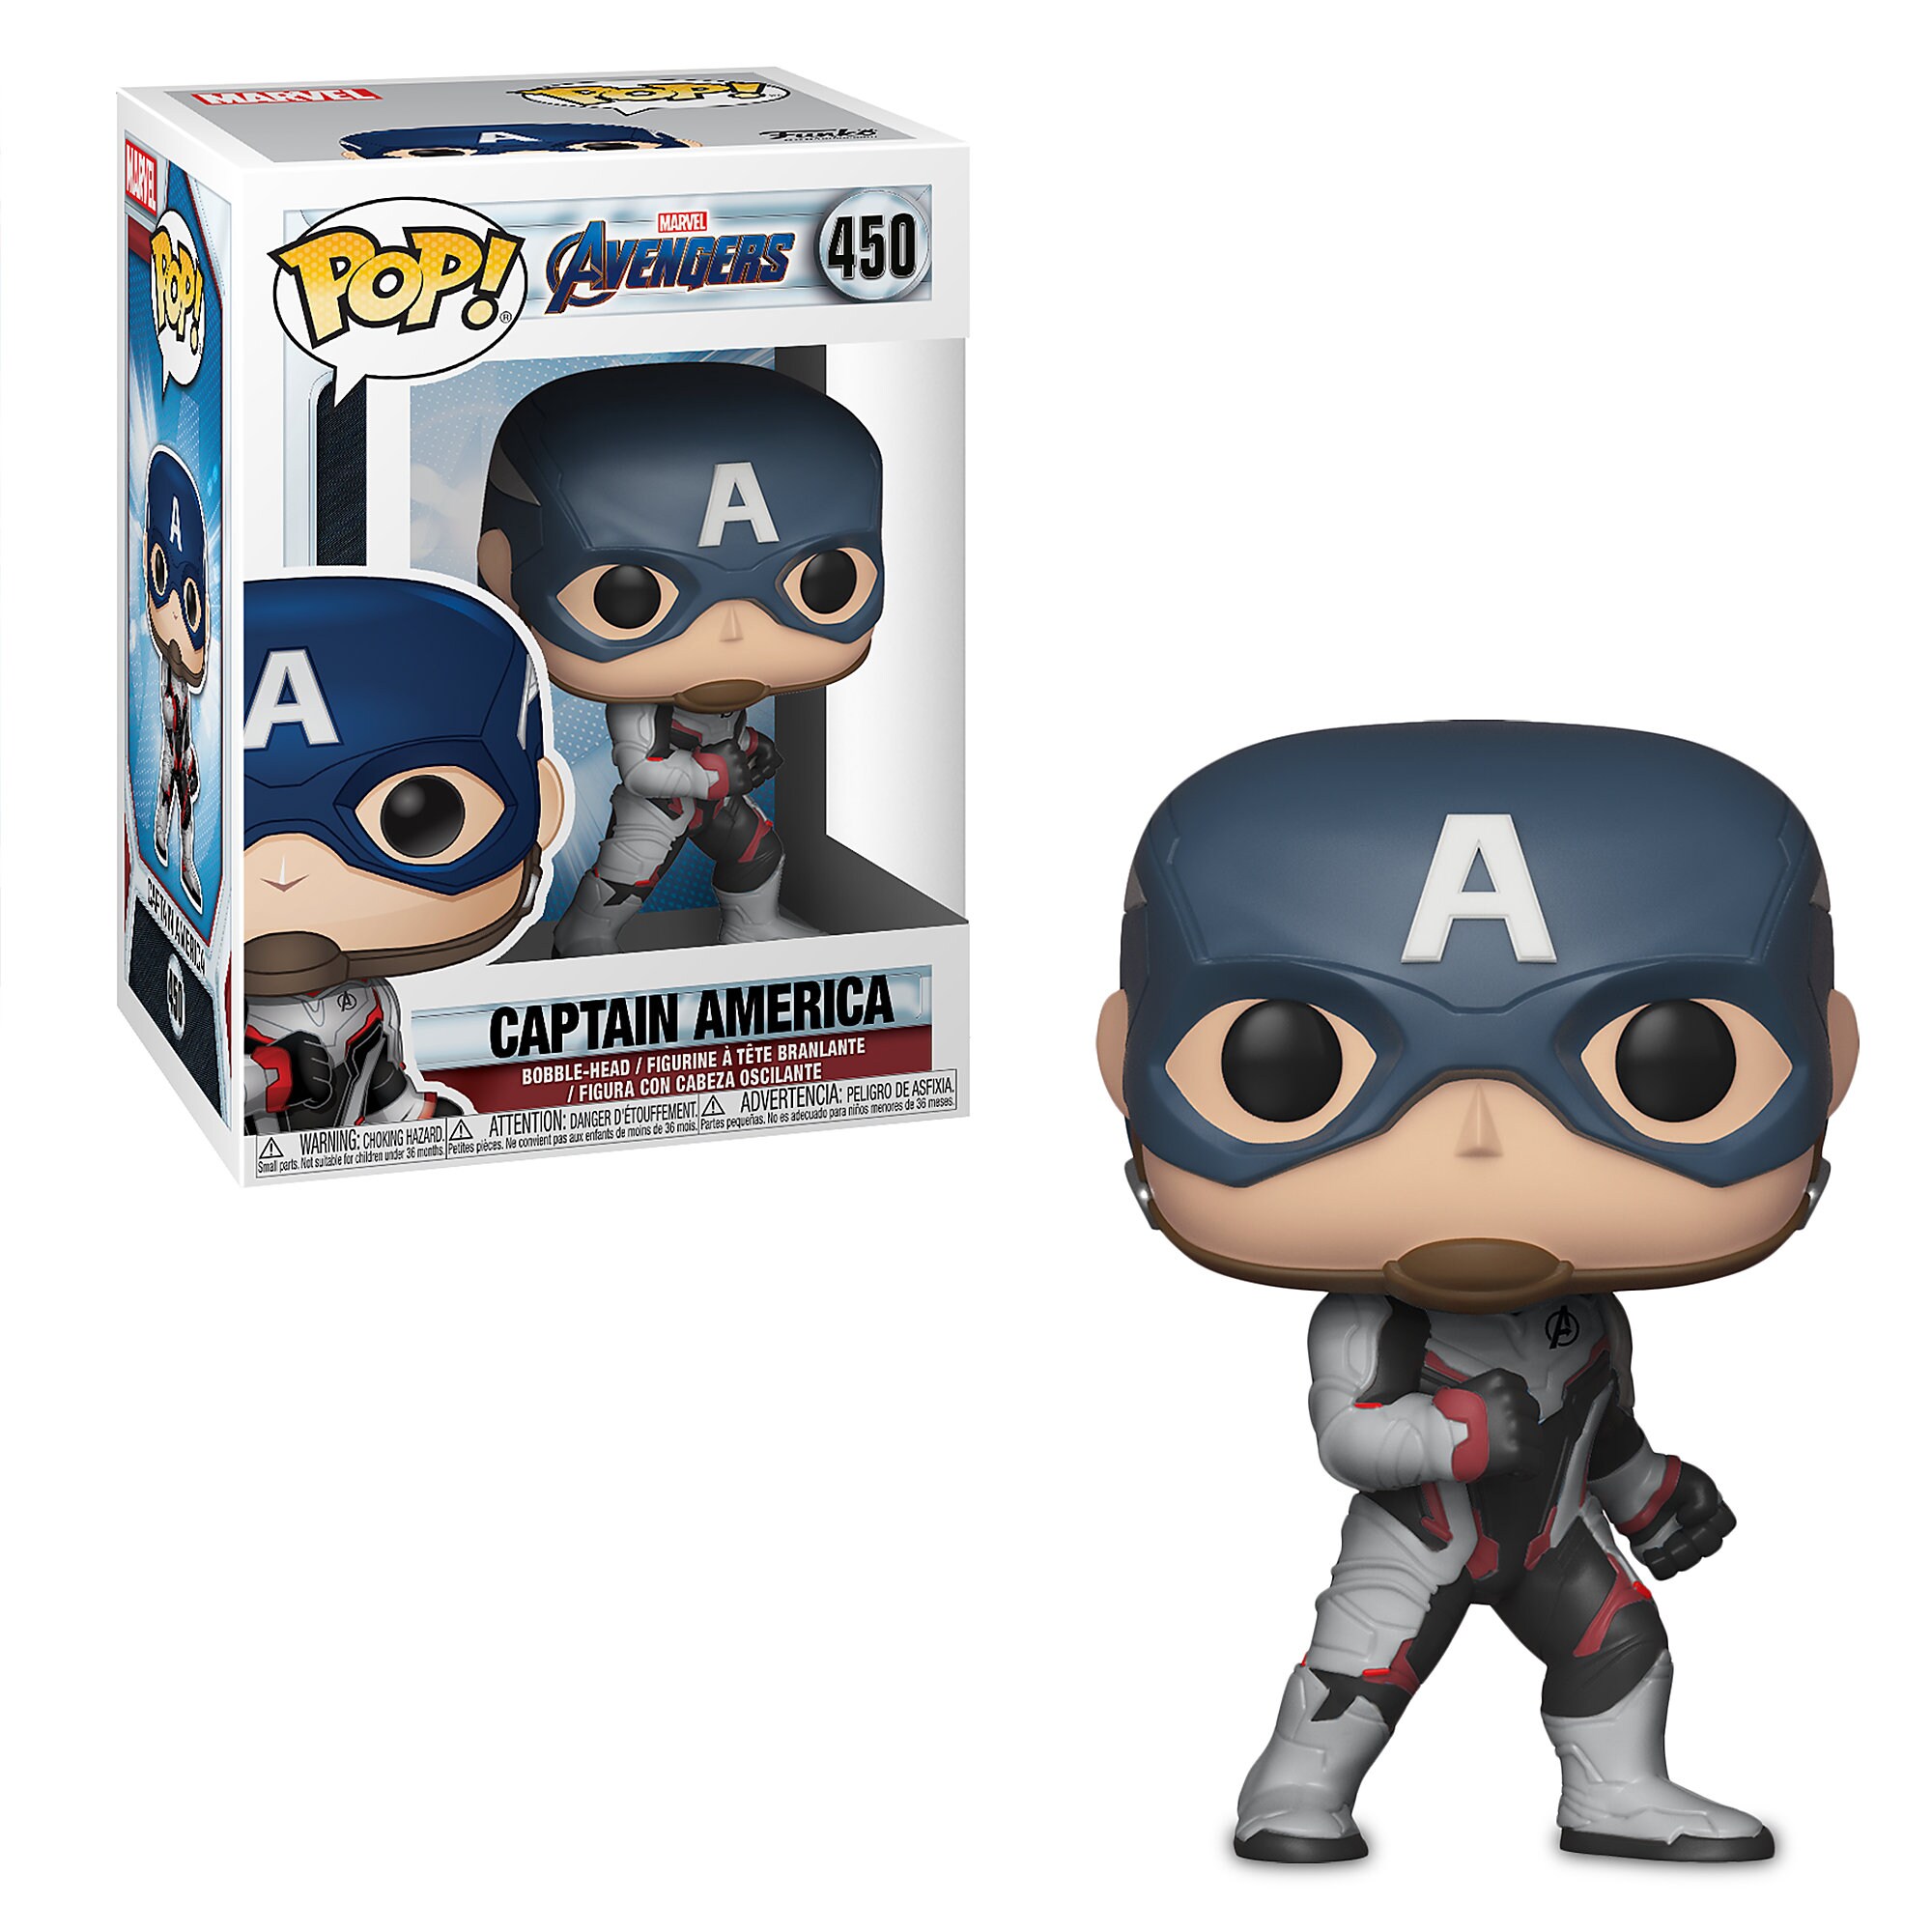 Captain America Pop! Vinyl Bobble-Head Figure by Funko - Marvel's Avengers: Endgame